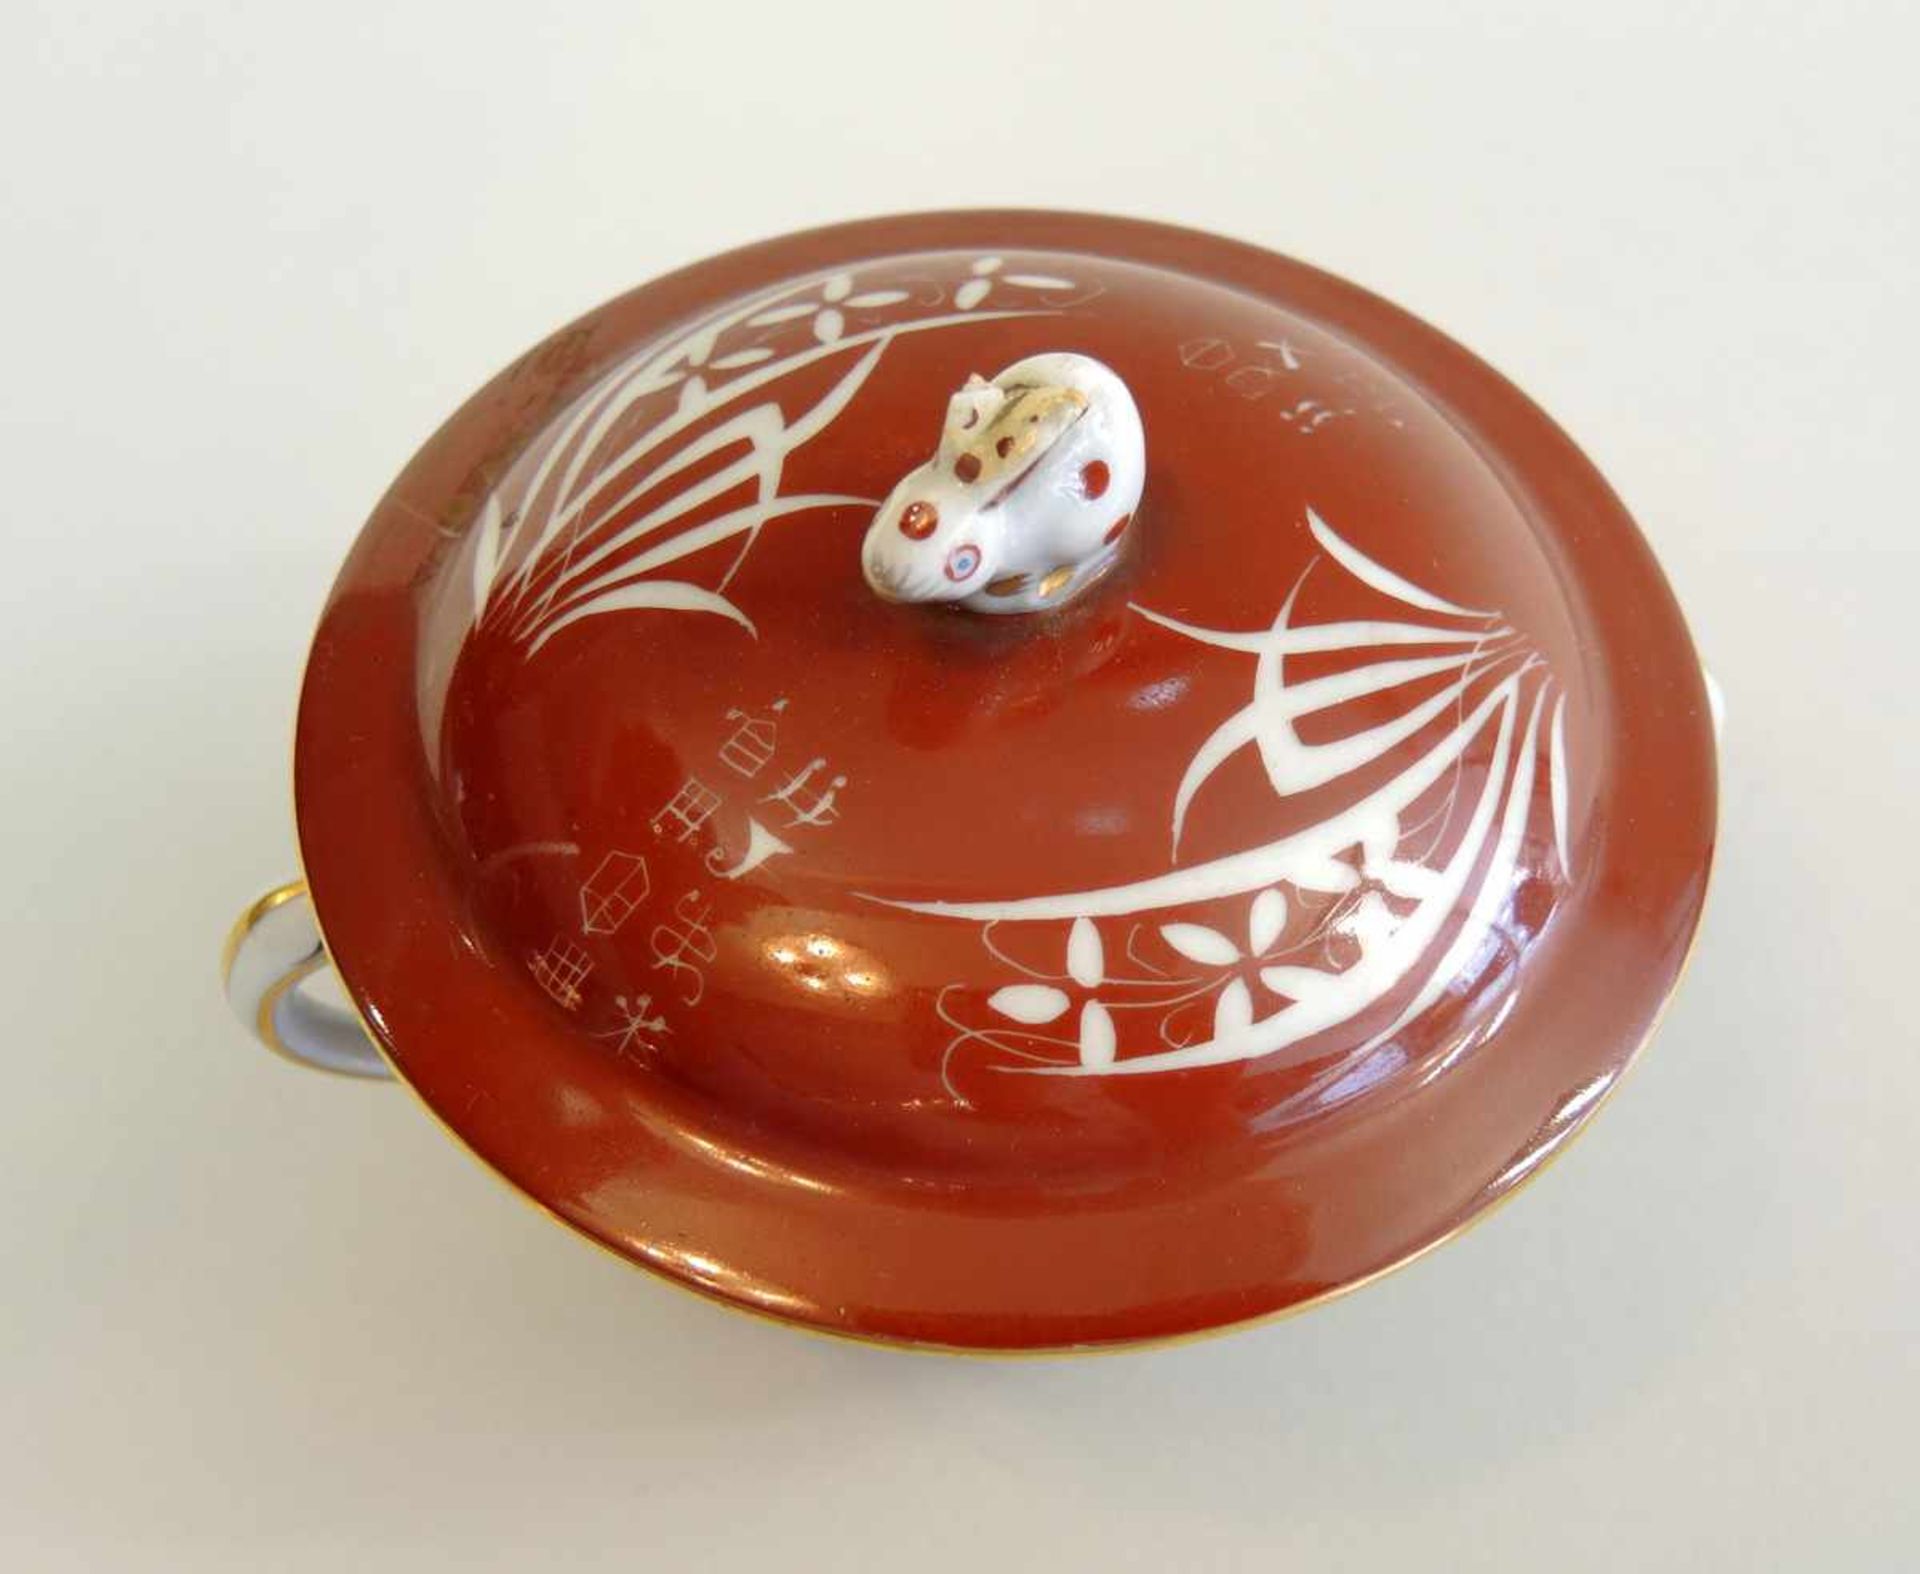 Kleine Herend-Suppentasse Porzellan mit Esterhazy-Dekor in rot und weiß, dezent gold staffiert. - Bild 2 aus 5